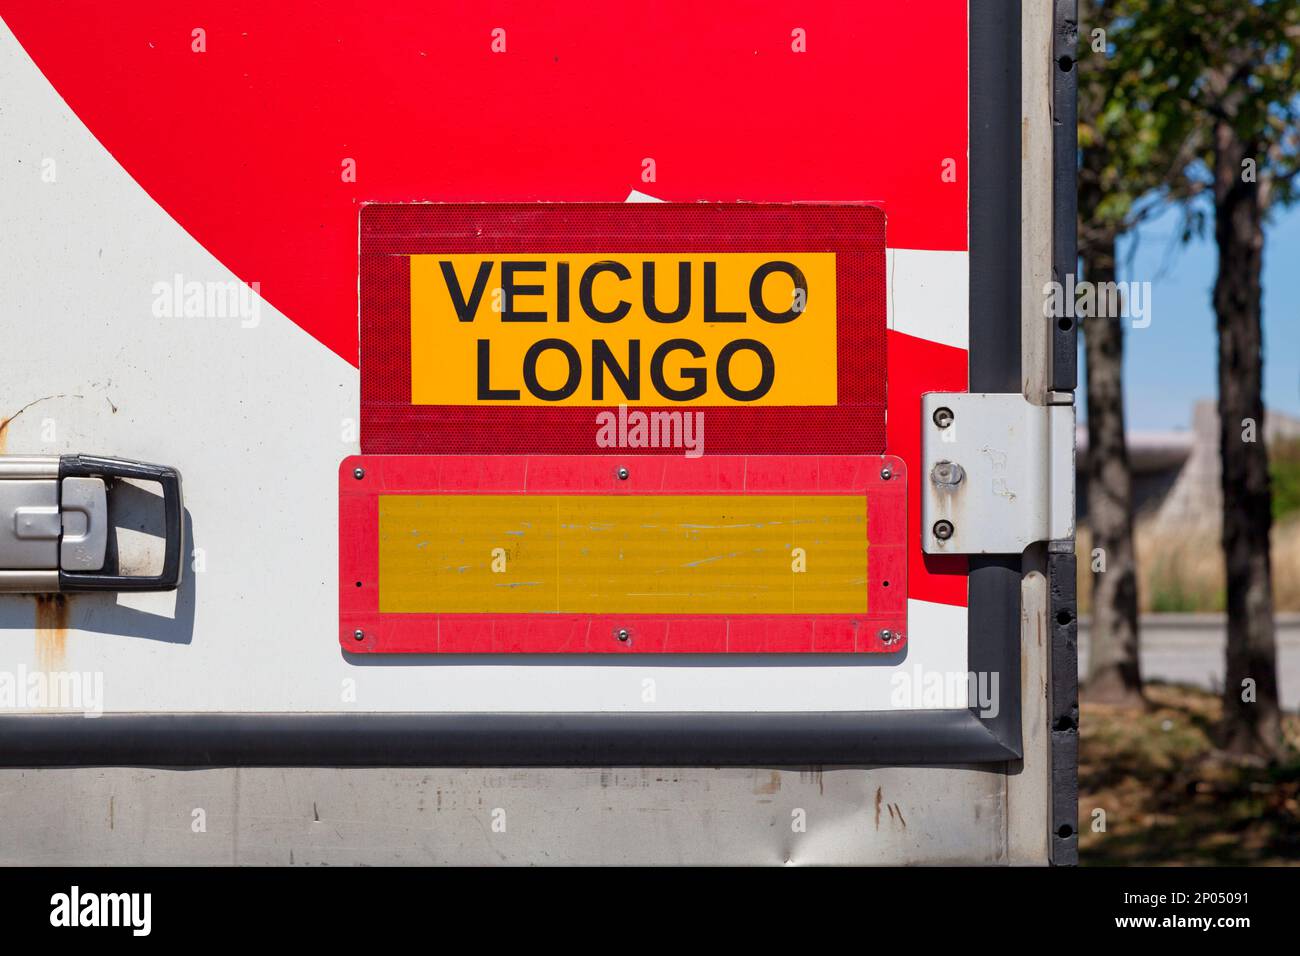 Panneau sur une porte arrière de camion disant en portugais 'Veiculo longo' signifiant en anglais 'long Veo'. Banque D'Images